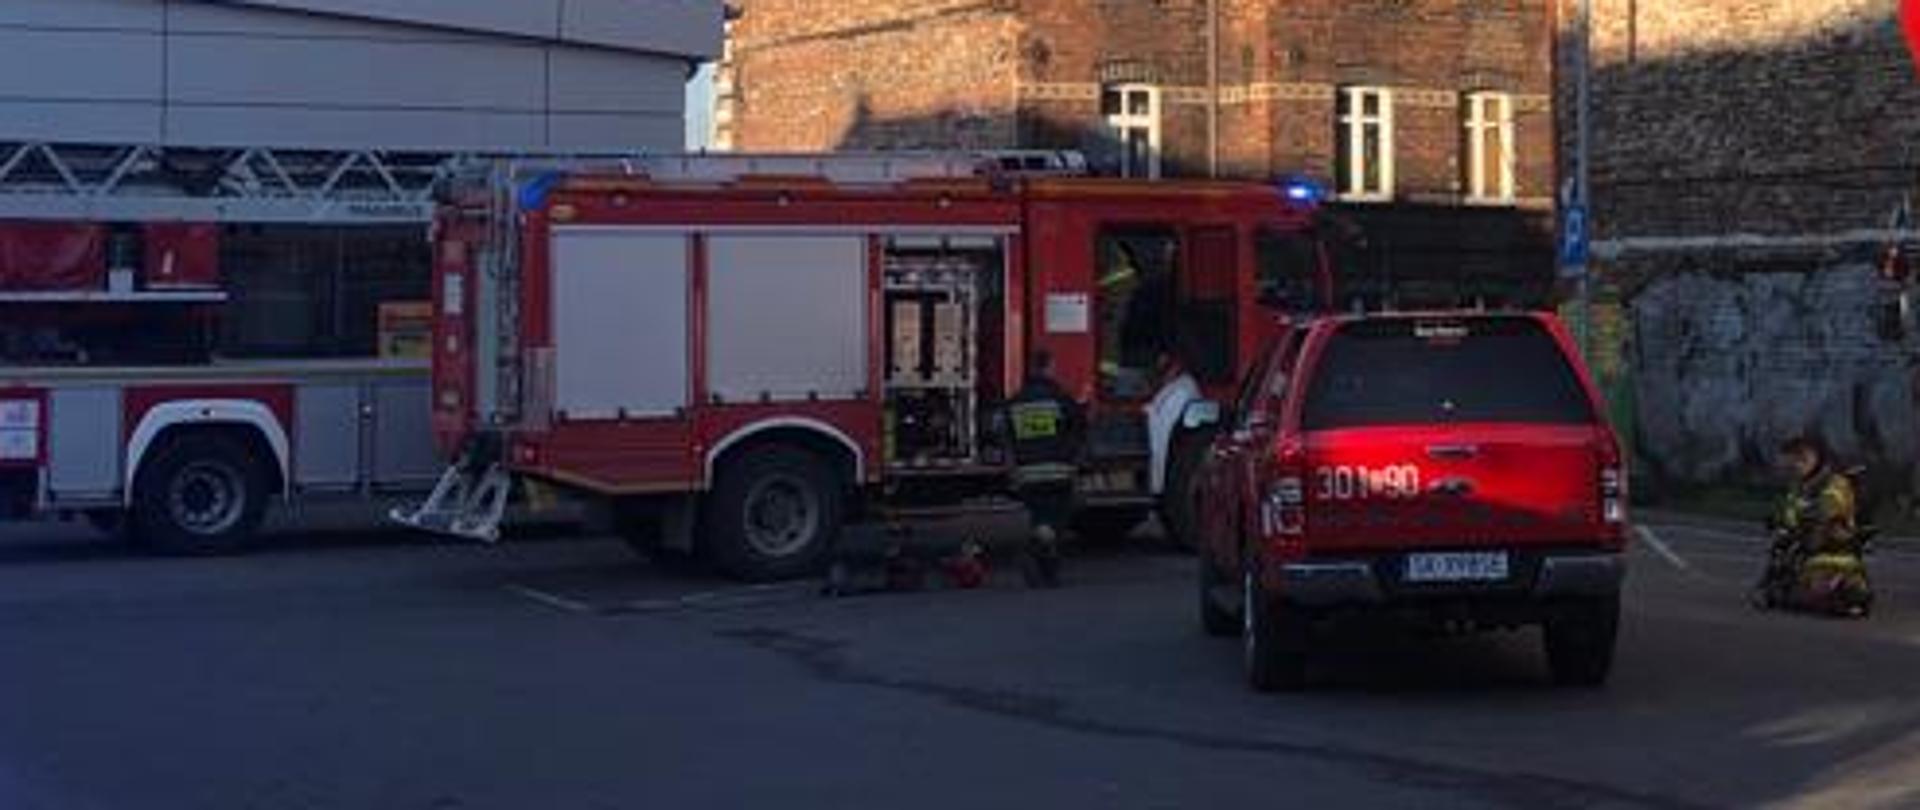 Pojazdy pożarnicze i działania strażaków przy pożarze mieszkania ul. Długa w Katowicach.